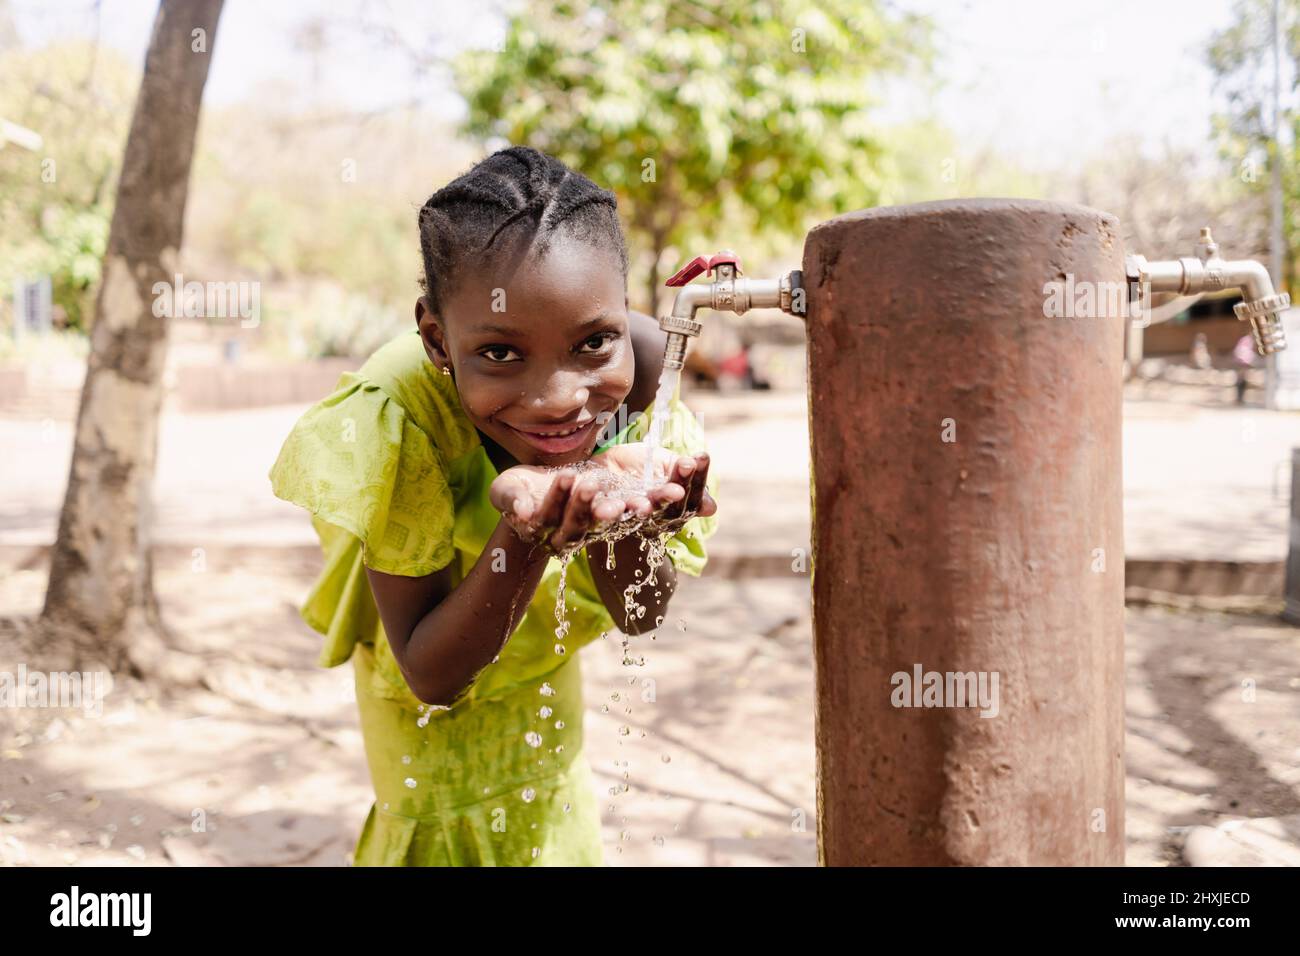 Fröhliches schwarzes afrikanisches Mädchen in einem schönen gelben Kleid, das frisches Wasser aus einem öffentlichen Wasserhahn trinkt Stockfoto